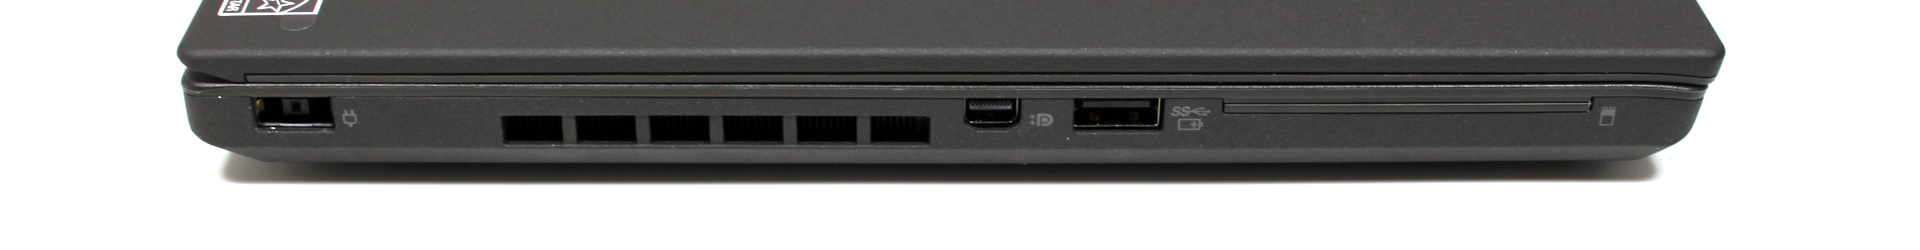 Lenovo ThinkPad T440_9_1